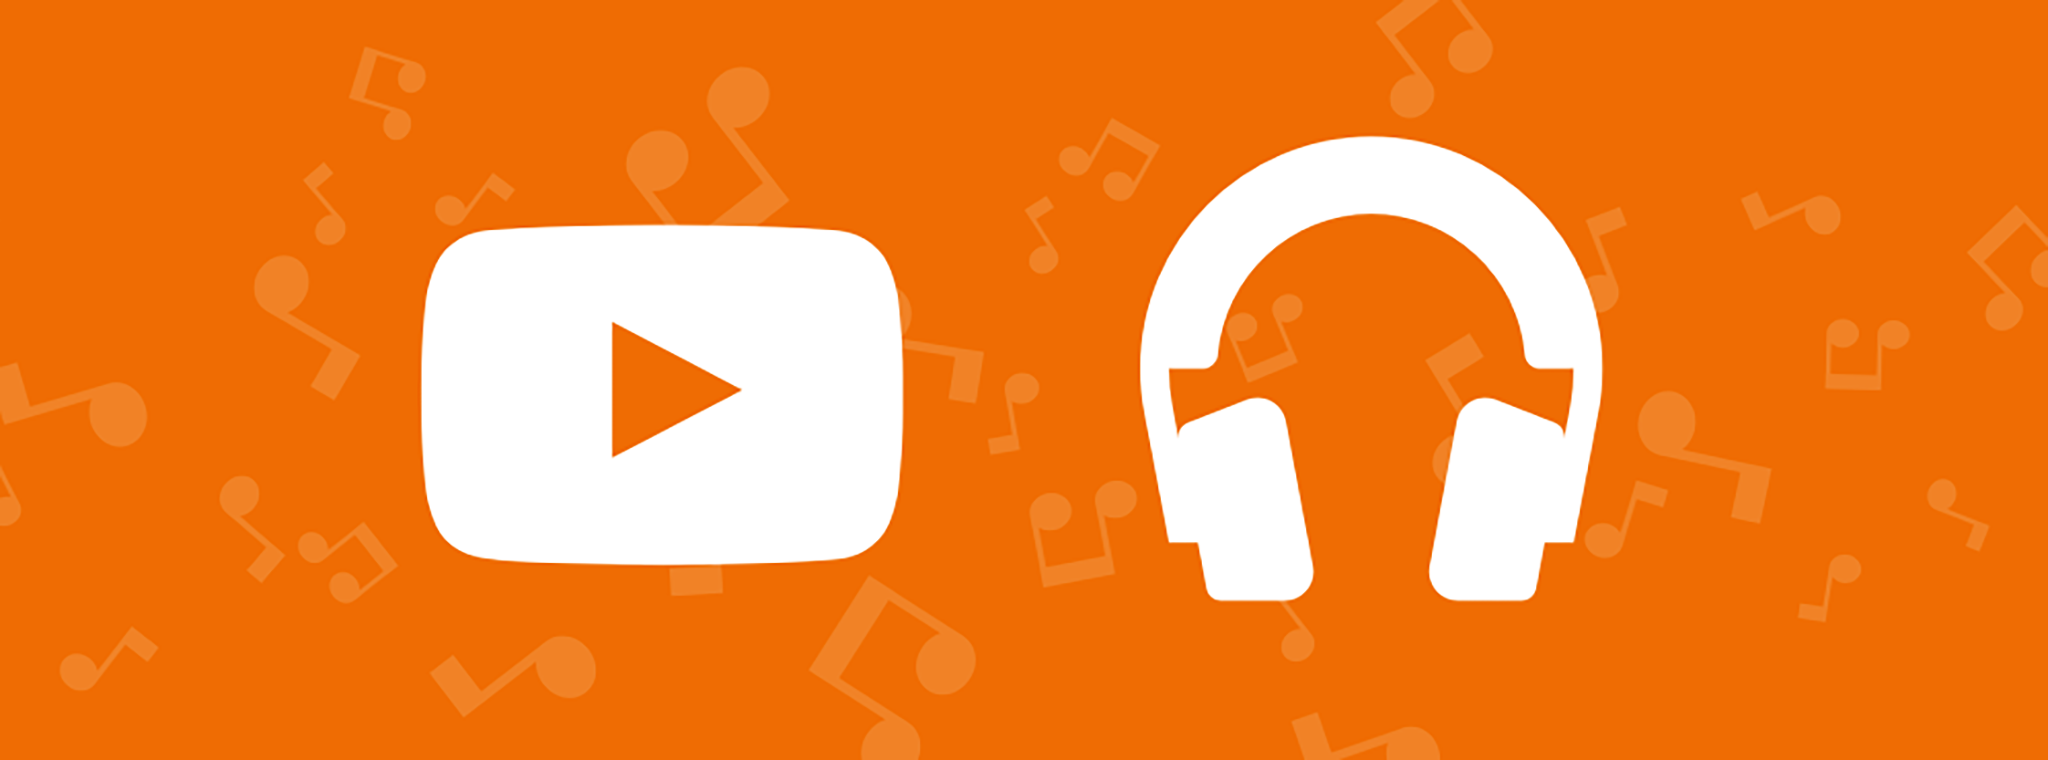 Google sẽ hợp nhất YouTube Red và Google Play Music, phát triển 1 dịch vụ duy nhất, chất lượng cao